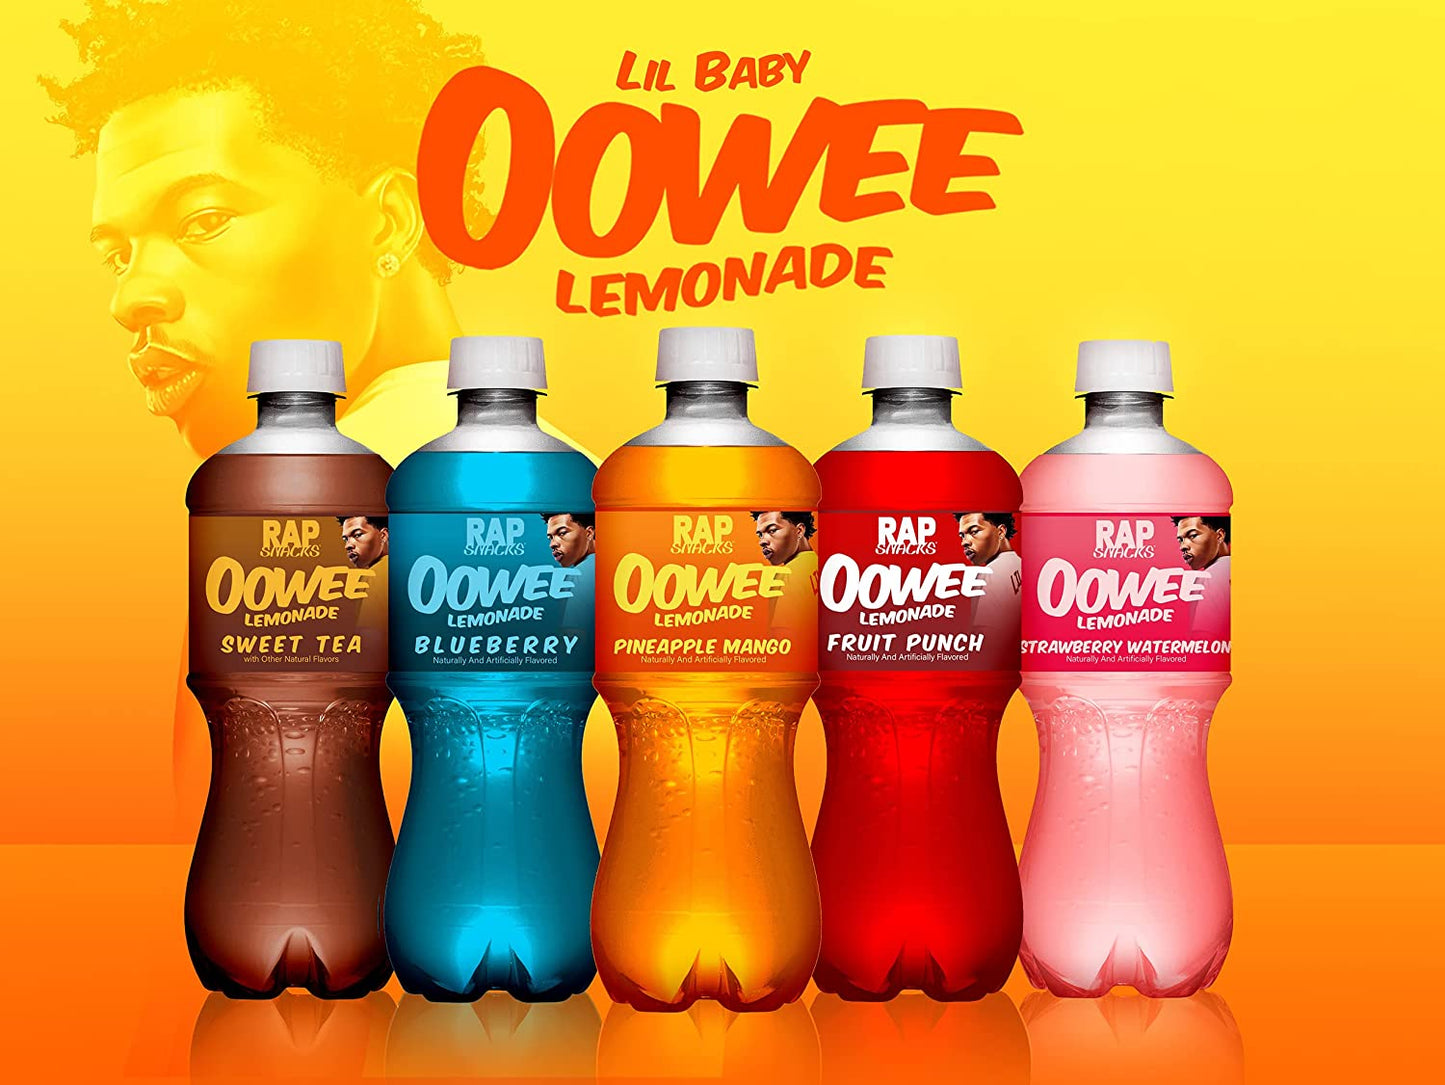 Rap Snacks Lil Baby Oowee Lemonades 20 Oz bottles Pack of 24 - 591 mL ...